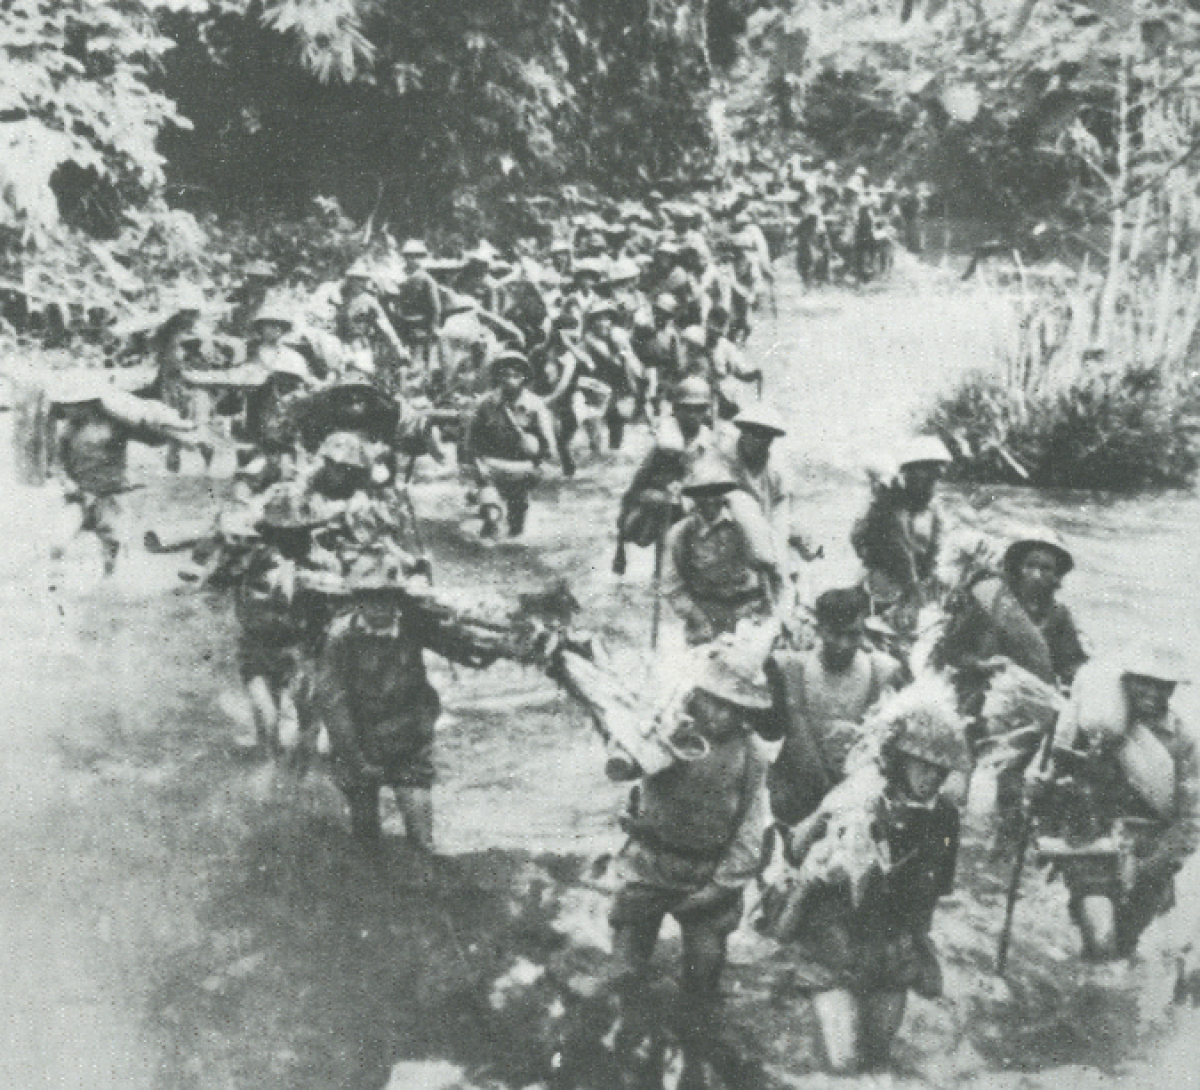 Thắng lợi của chiến dịch Tây Bắc góp phần quan trọng để quân và dân ta tiến tới chiến thắng Điện Biên Phủ "chấn động địa cầu" 07/05/1954. Ảnh: Tư liệu